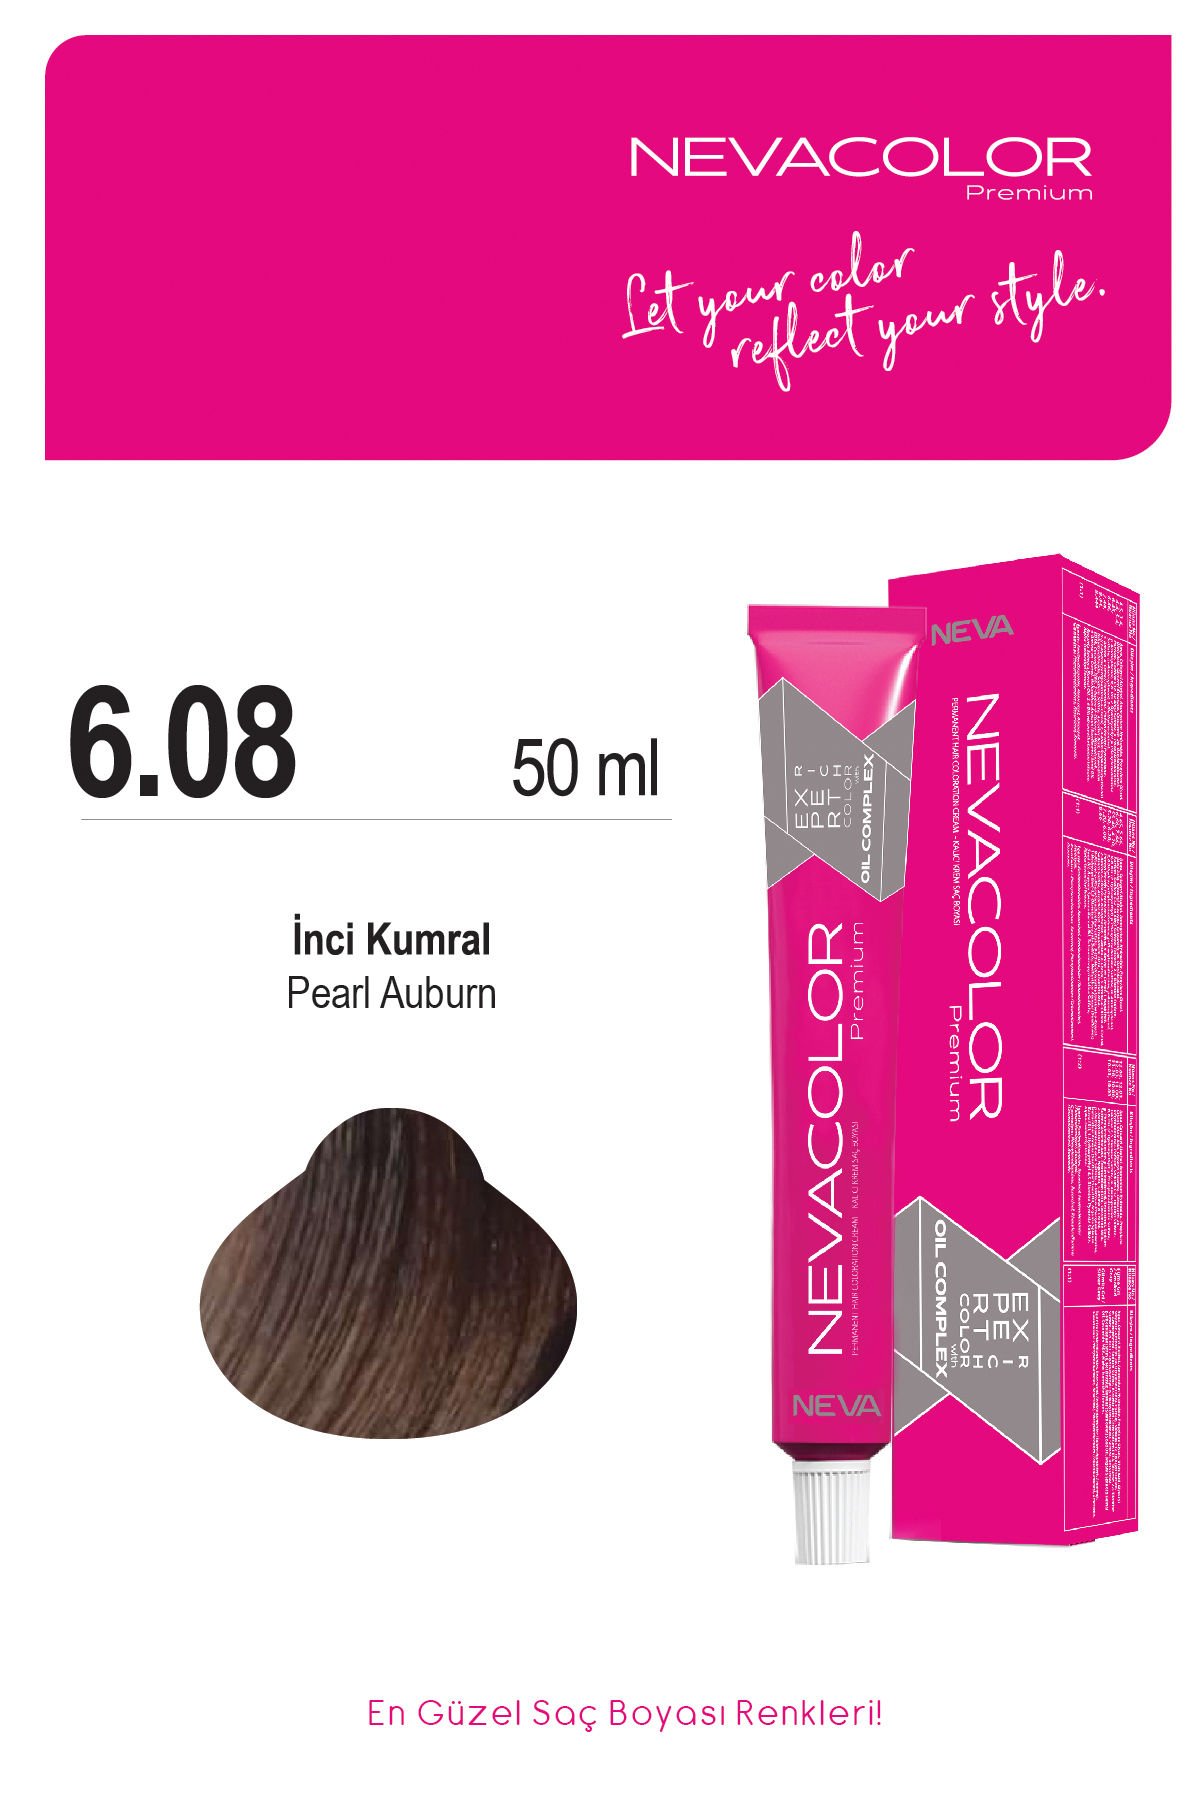 Nevacolor Premium 6.08 İnci Kumral - Kalıcı Krem Saç Boyası 50 g Tüp